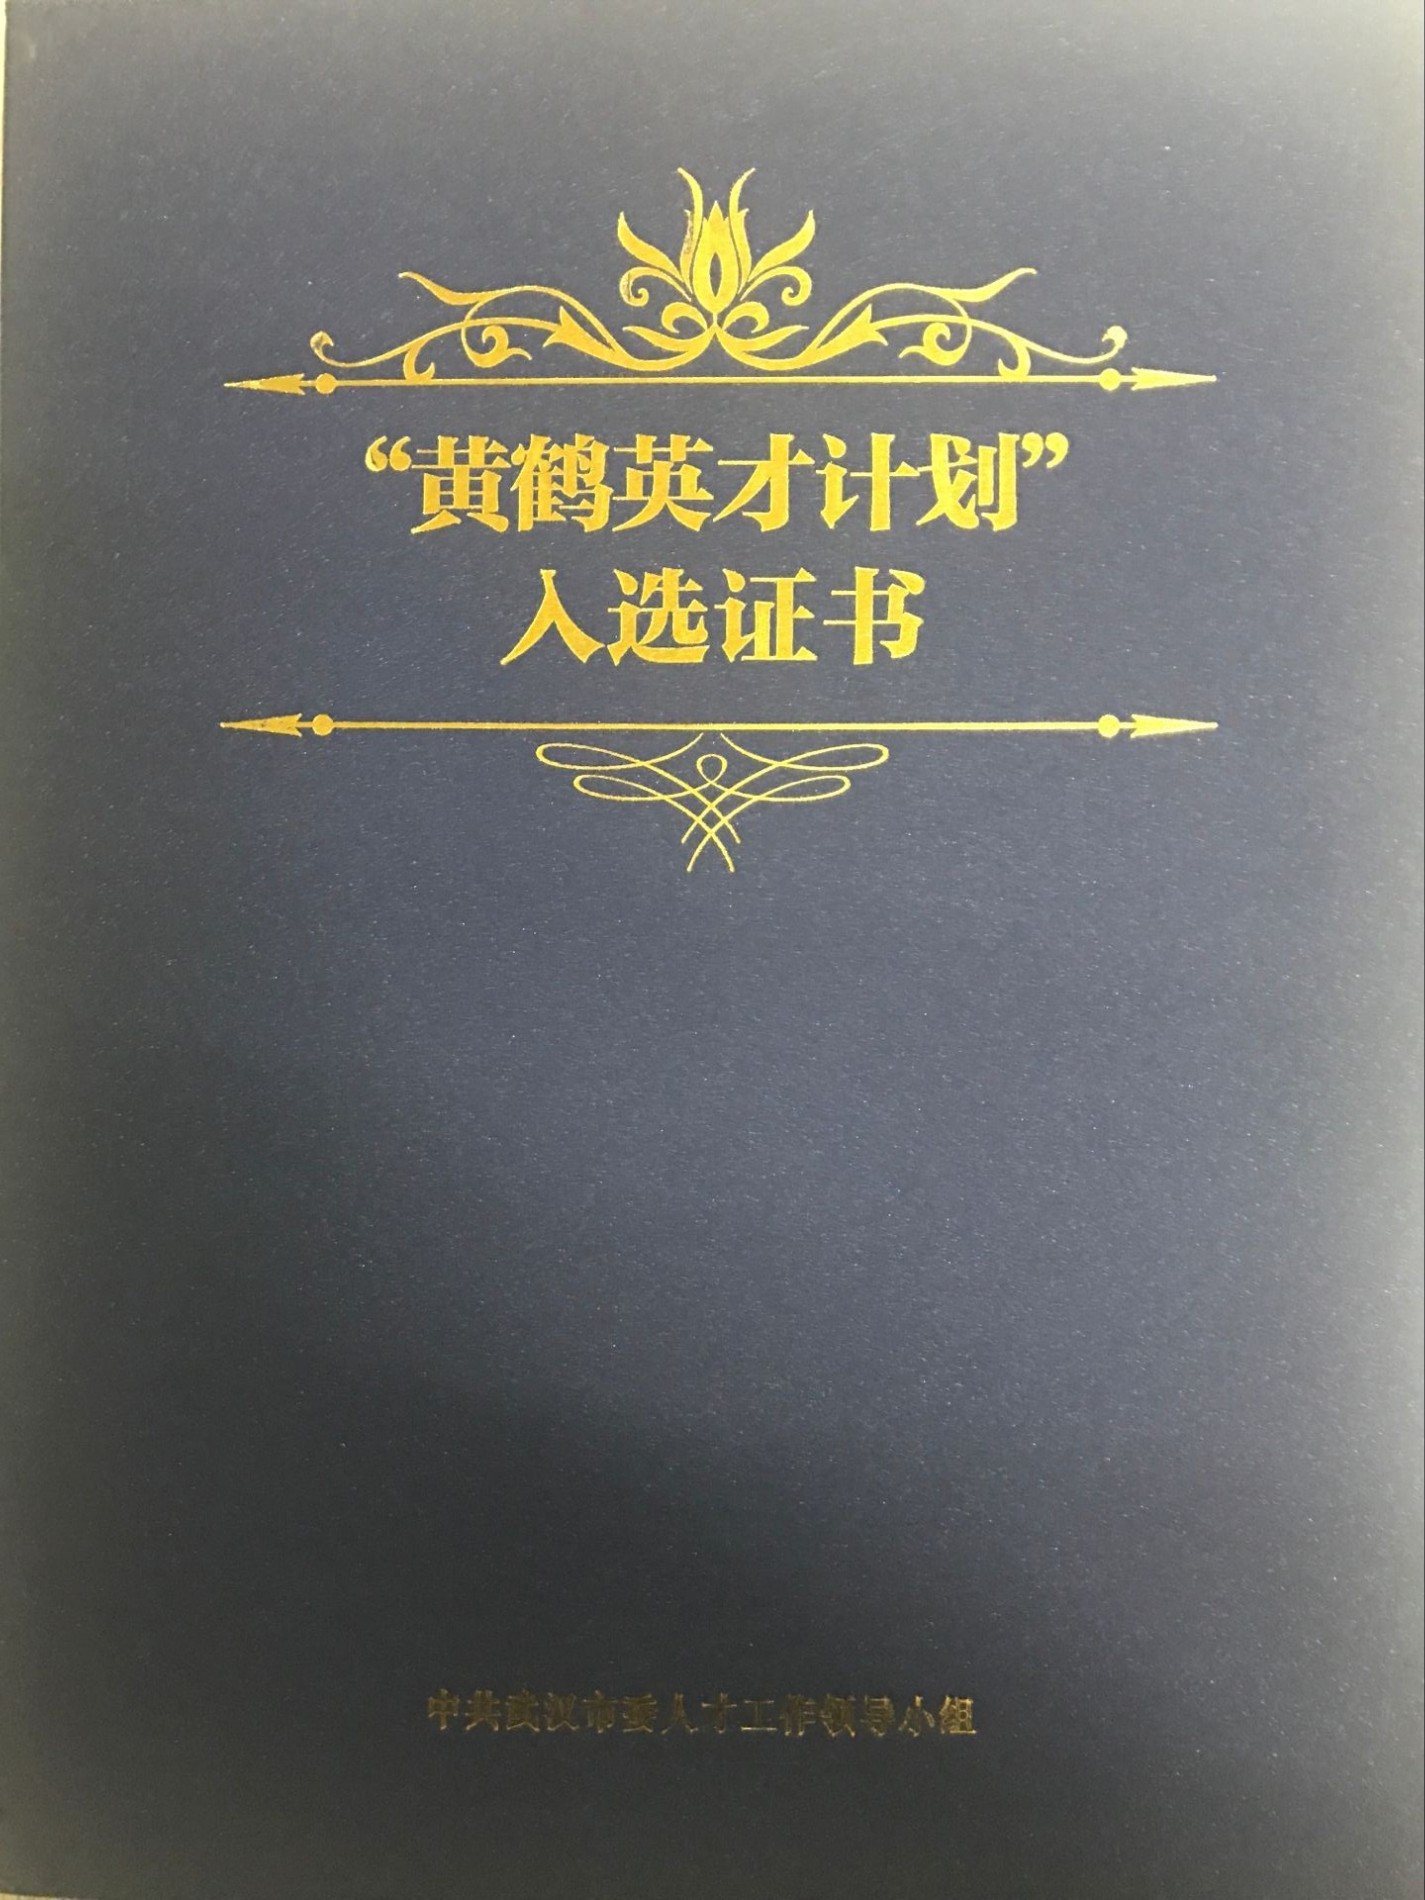 HUANGHE Yingcai Certificado Scheme